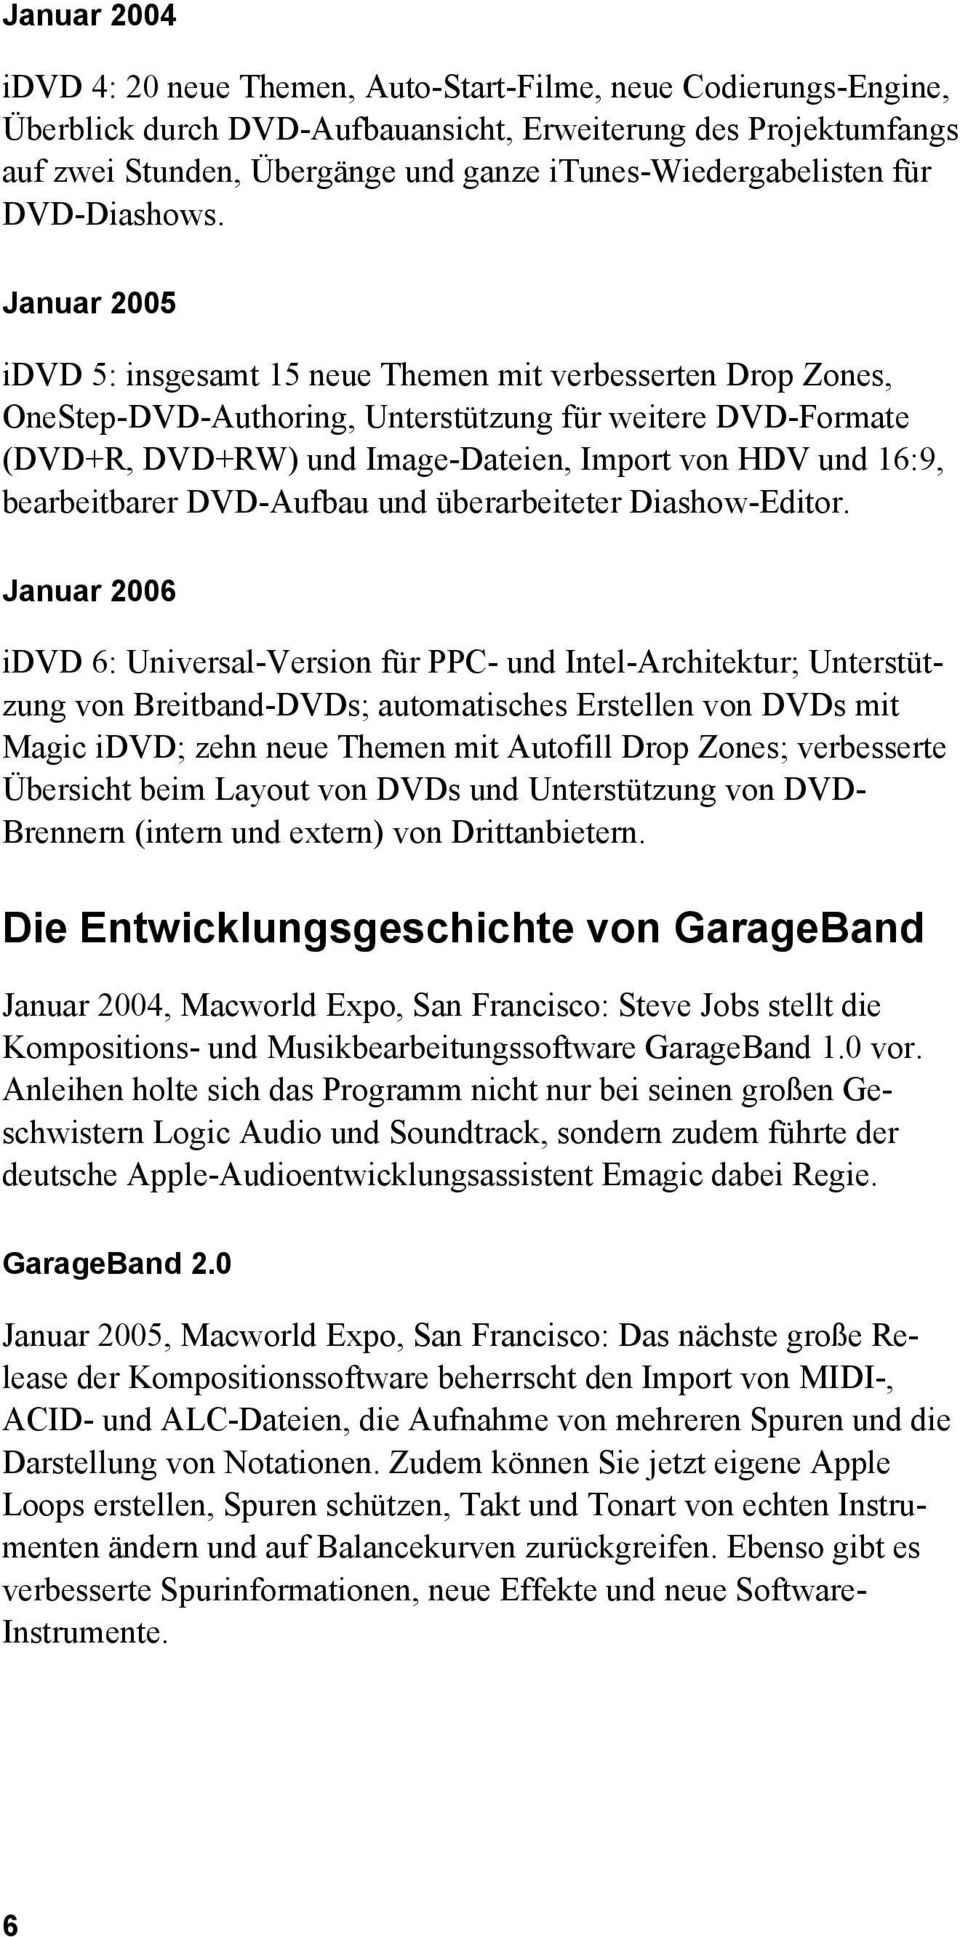 Januar 2005 idvd 5: insgesamt 15 neue Themen mit verbesserten Drop Zones, OneStep-DVD-Authoring, Unterstützung für weitere DVD-Formate (DVD+R, DVD+RW) und Image-Dateien, Import von HDV und 16:9,